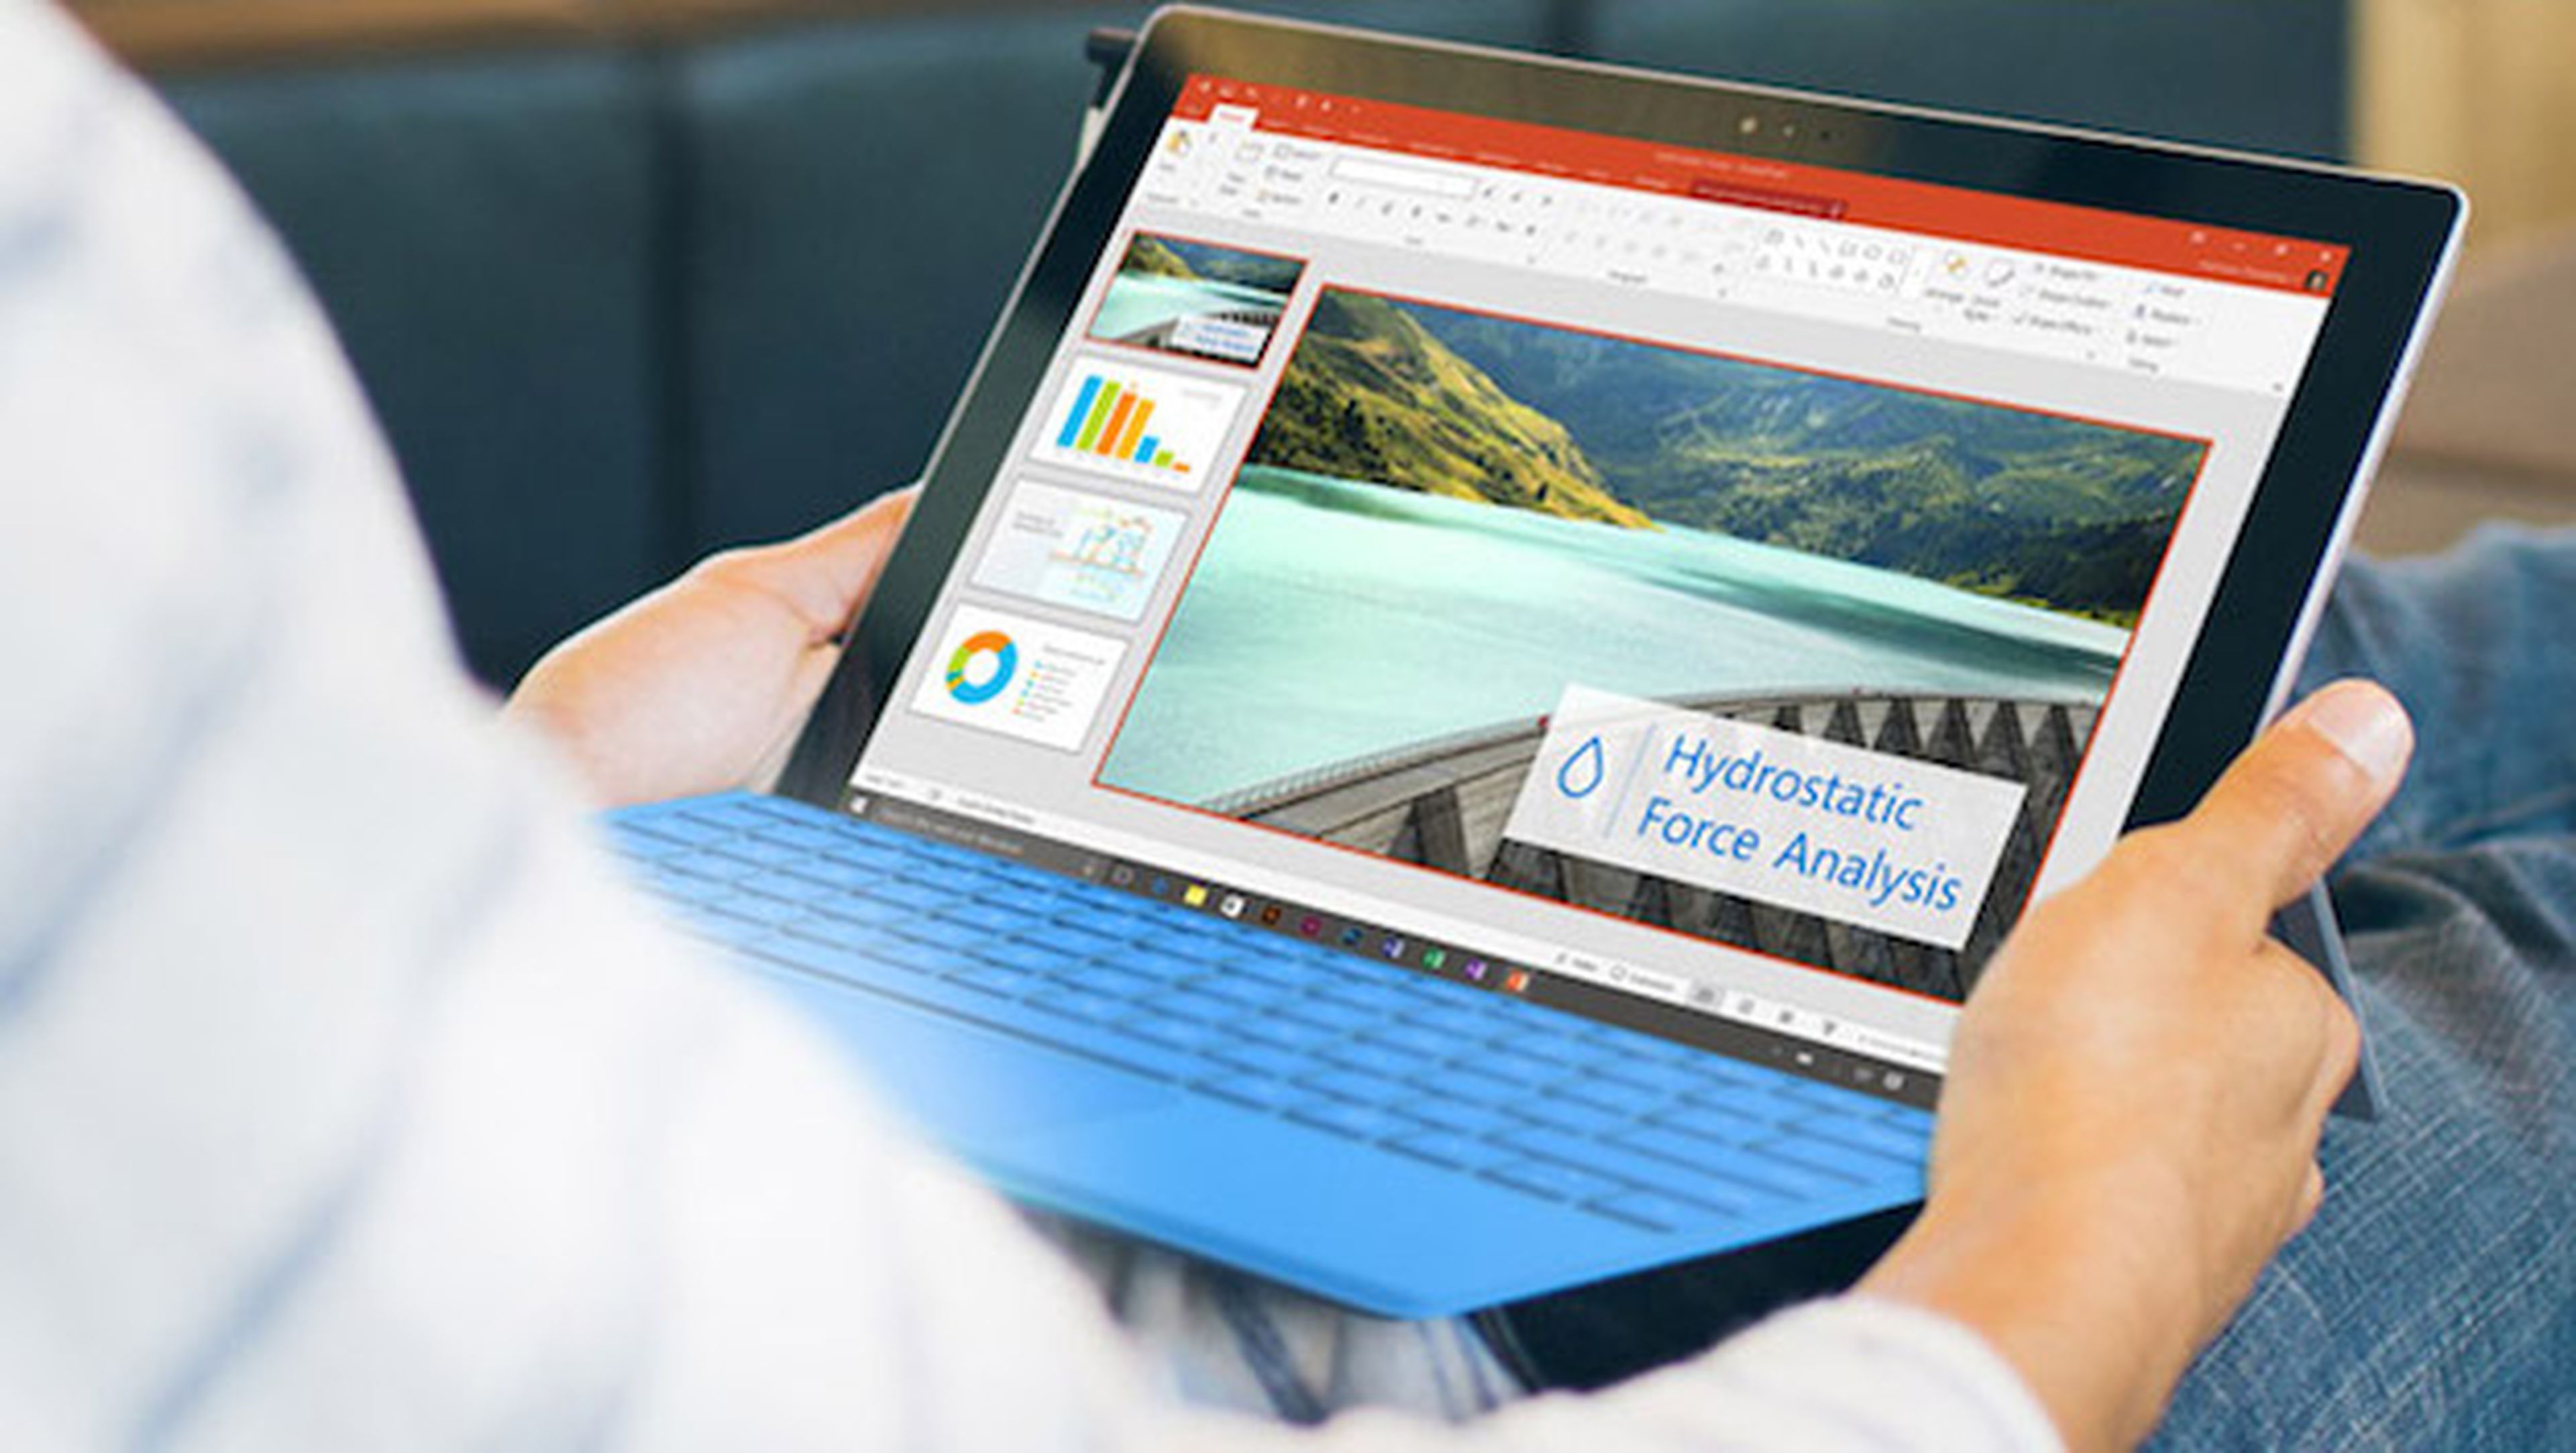 Microsoft confirma el precio de la Surface Pro 4 en España